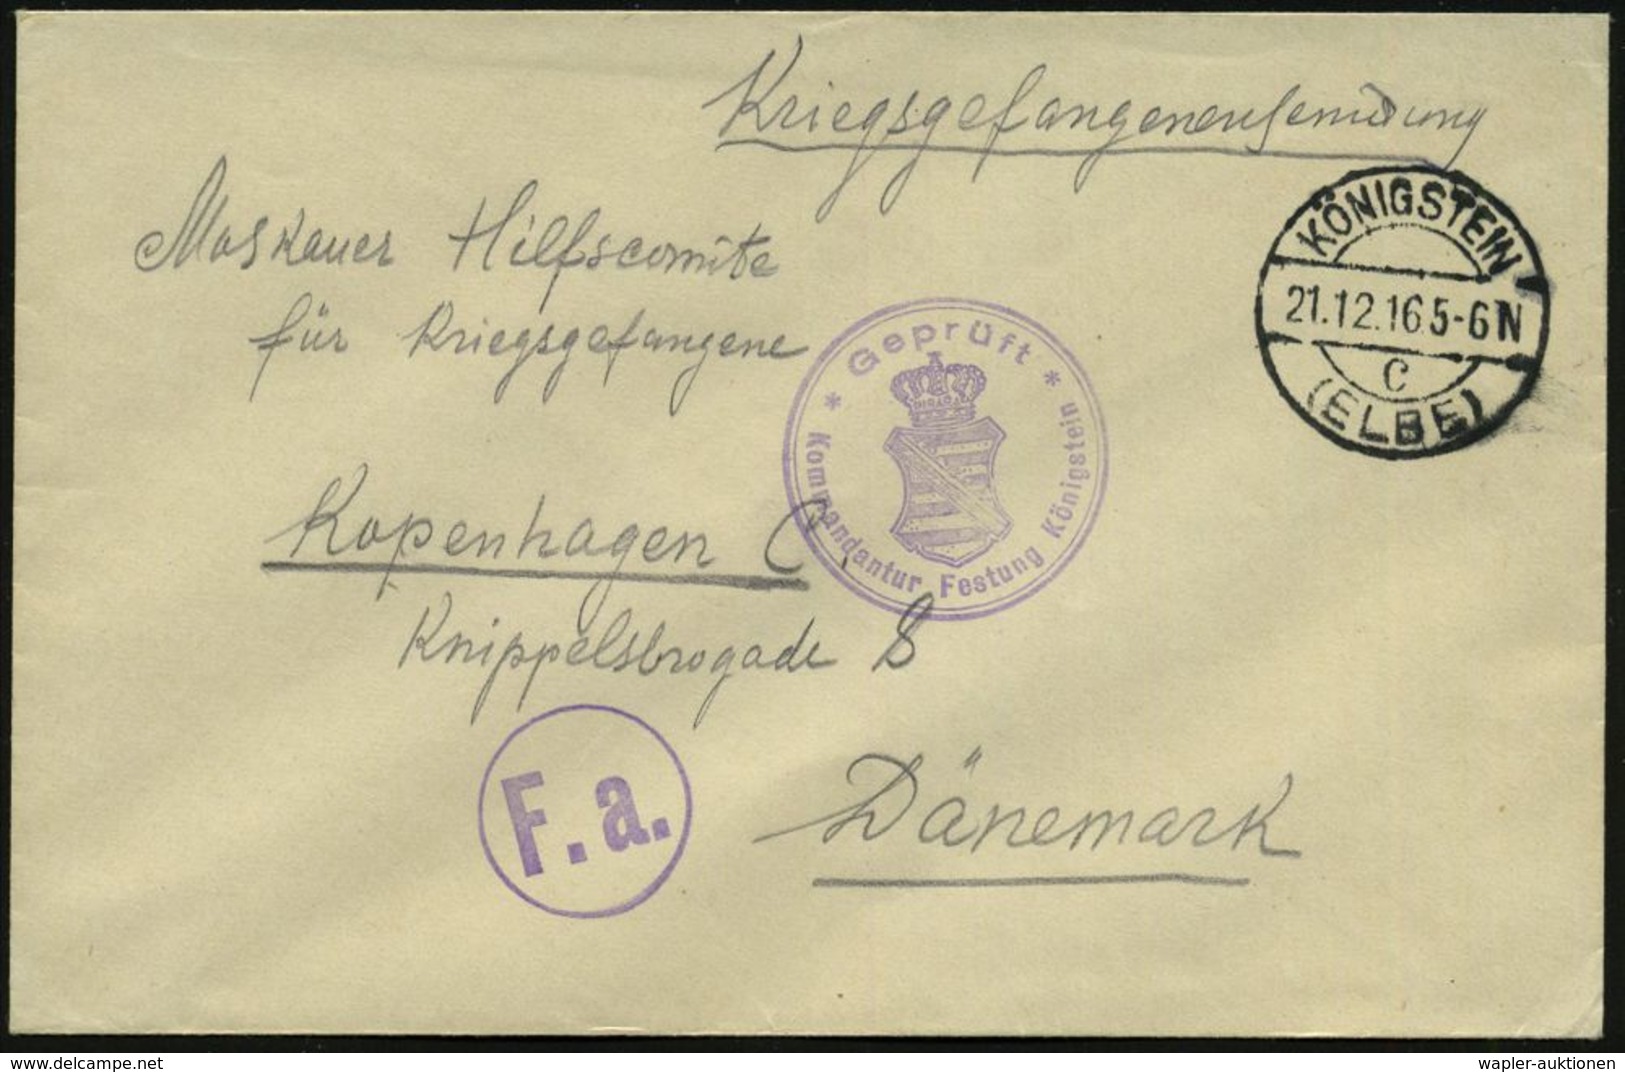 KÖNIGSTEIN/ C/ (ELBE) 1916 (Dez.) 1K-Brücke + Viol. Zensur-2K: Geprüft/ Kommandantur Festung Königstein (sächs. Wappen)  - Croix-Rouge